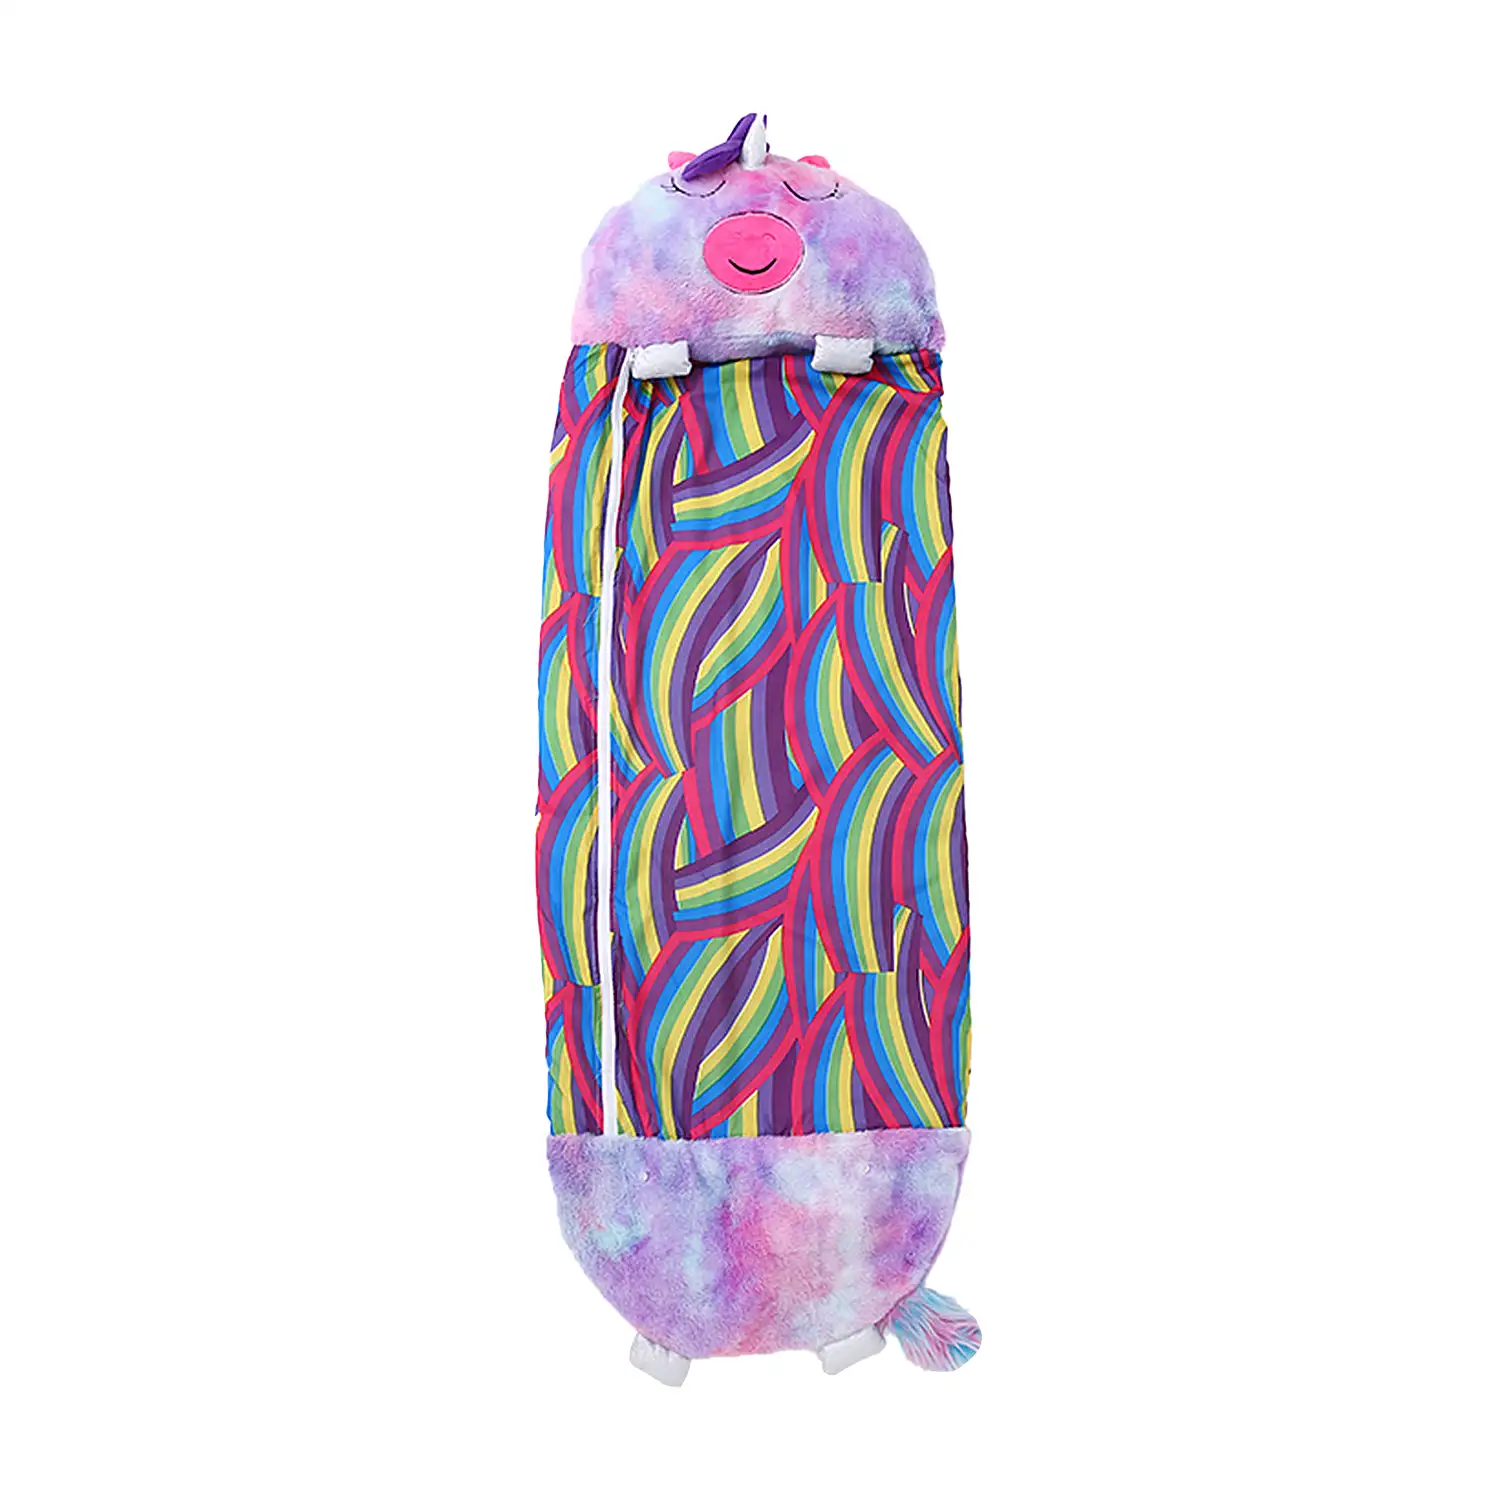 Saco de dormir convertible en almohada, para niños, Unicornio Multicolor Violeta. Tacto peluche. Pequeño / S: 135x50cm.